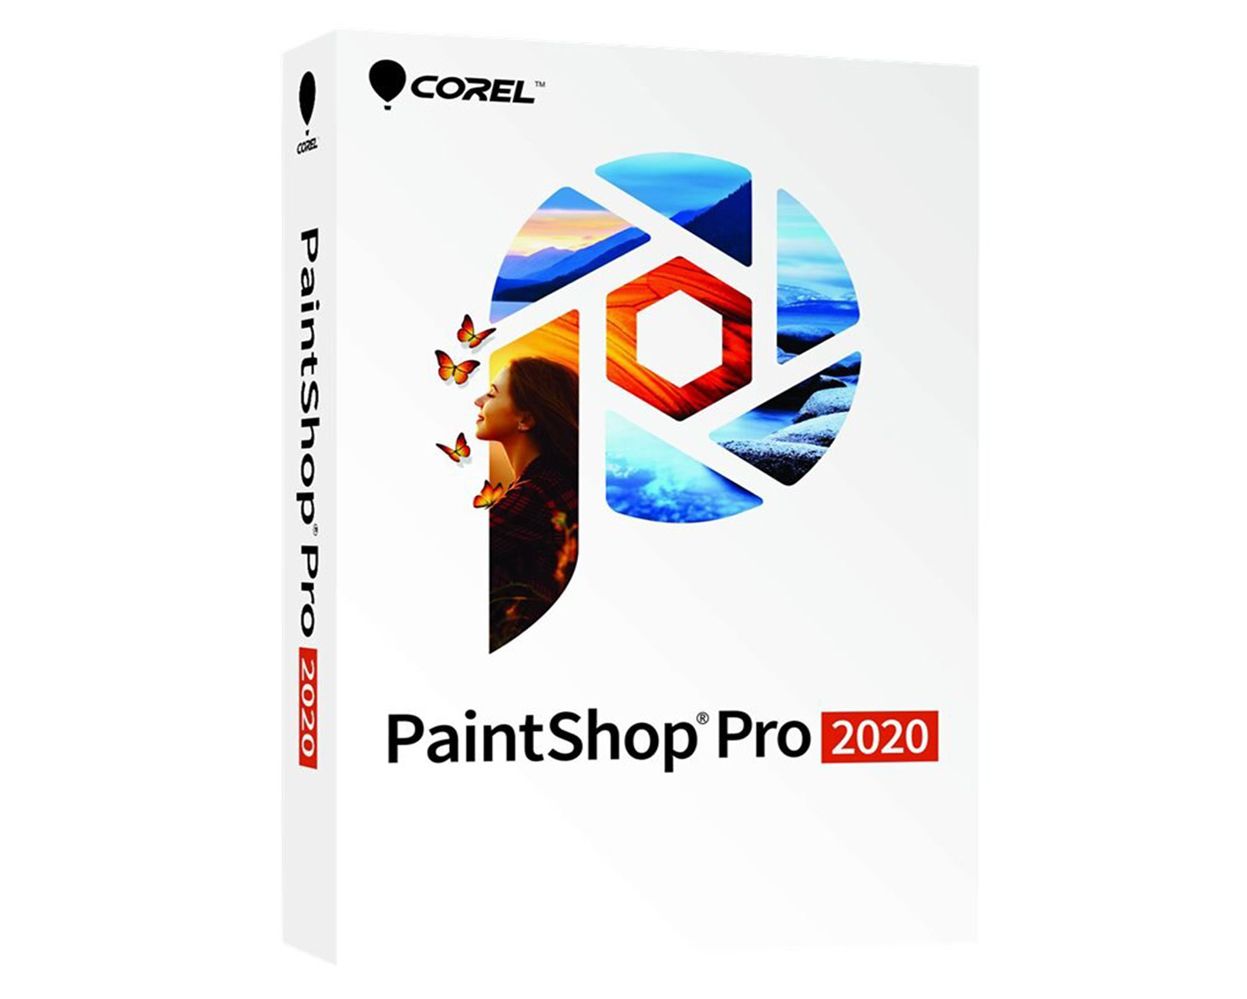 paint shop pro 2020 release date